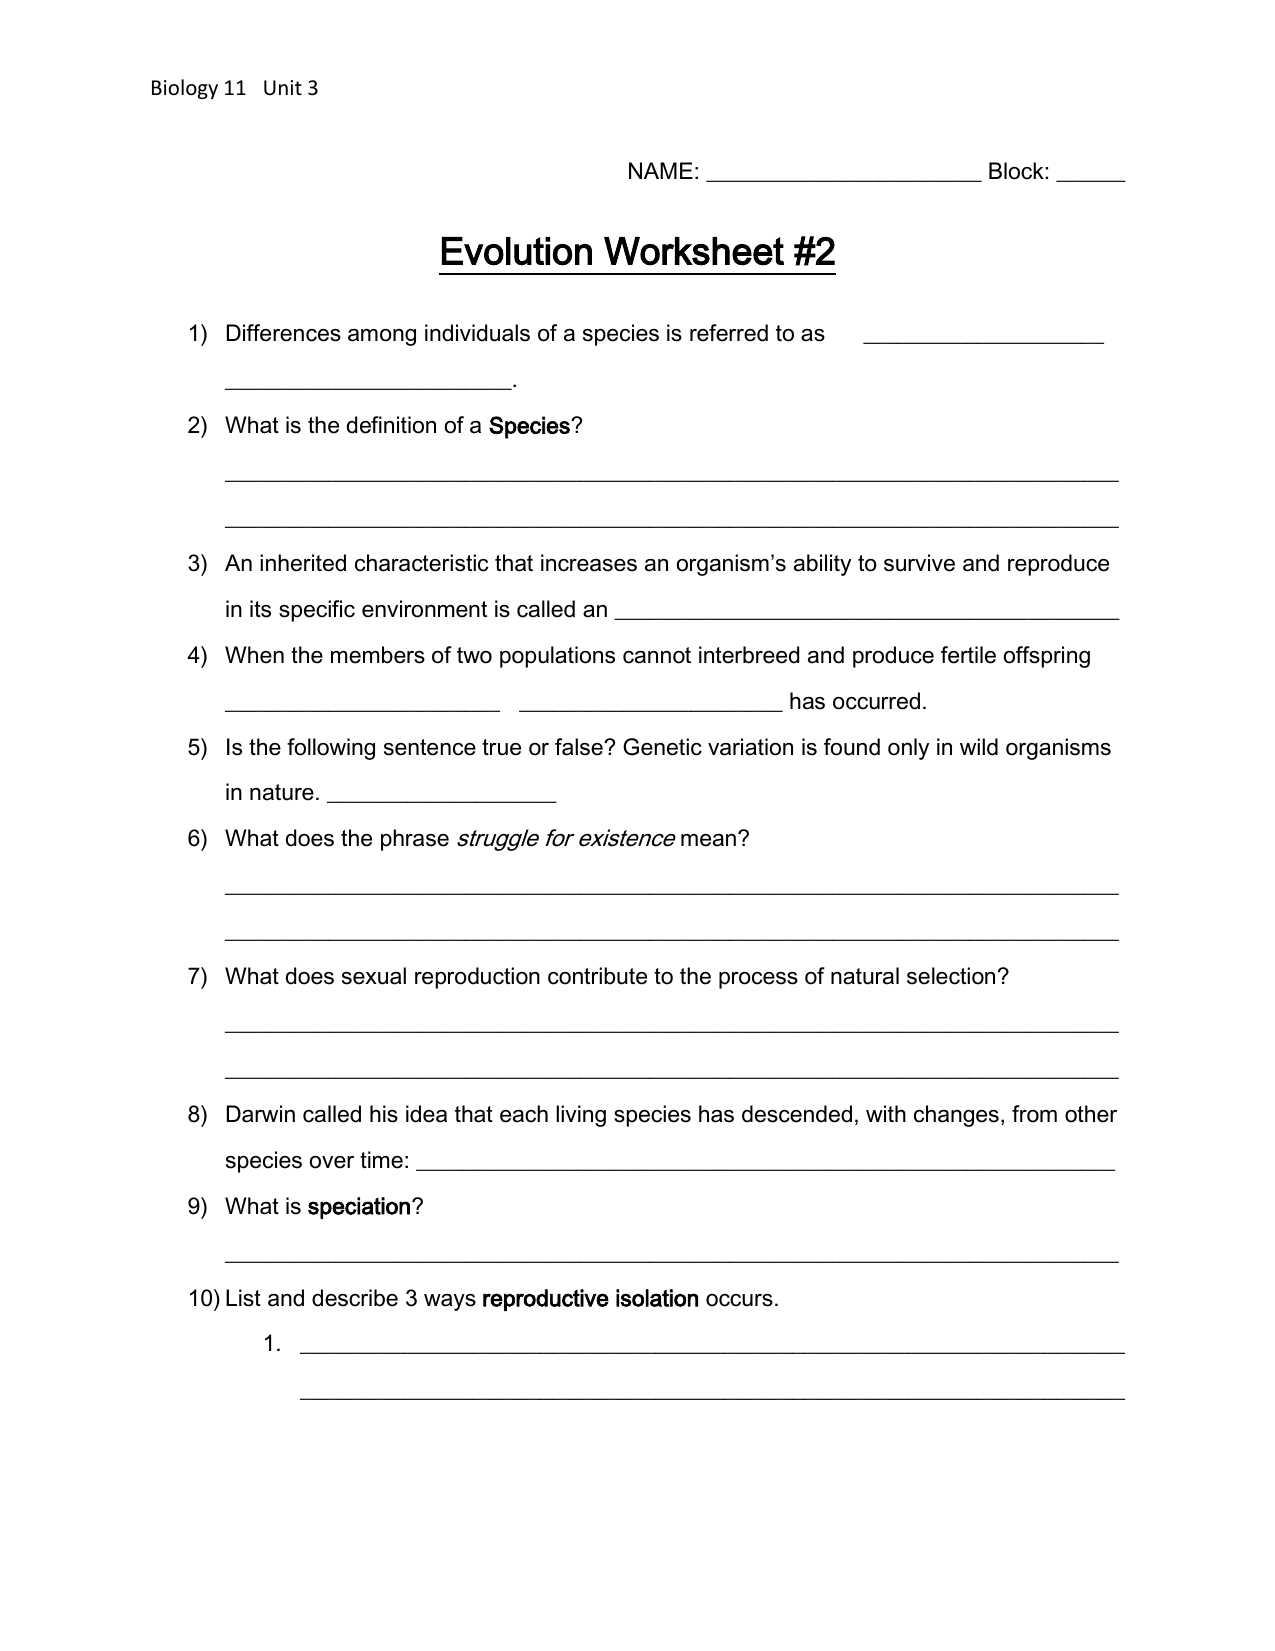 Evolution Worksheet 2 — db-excel.com